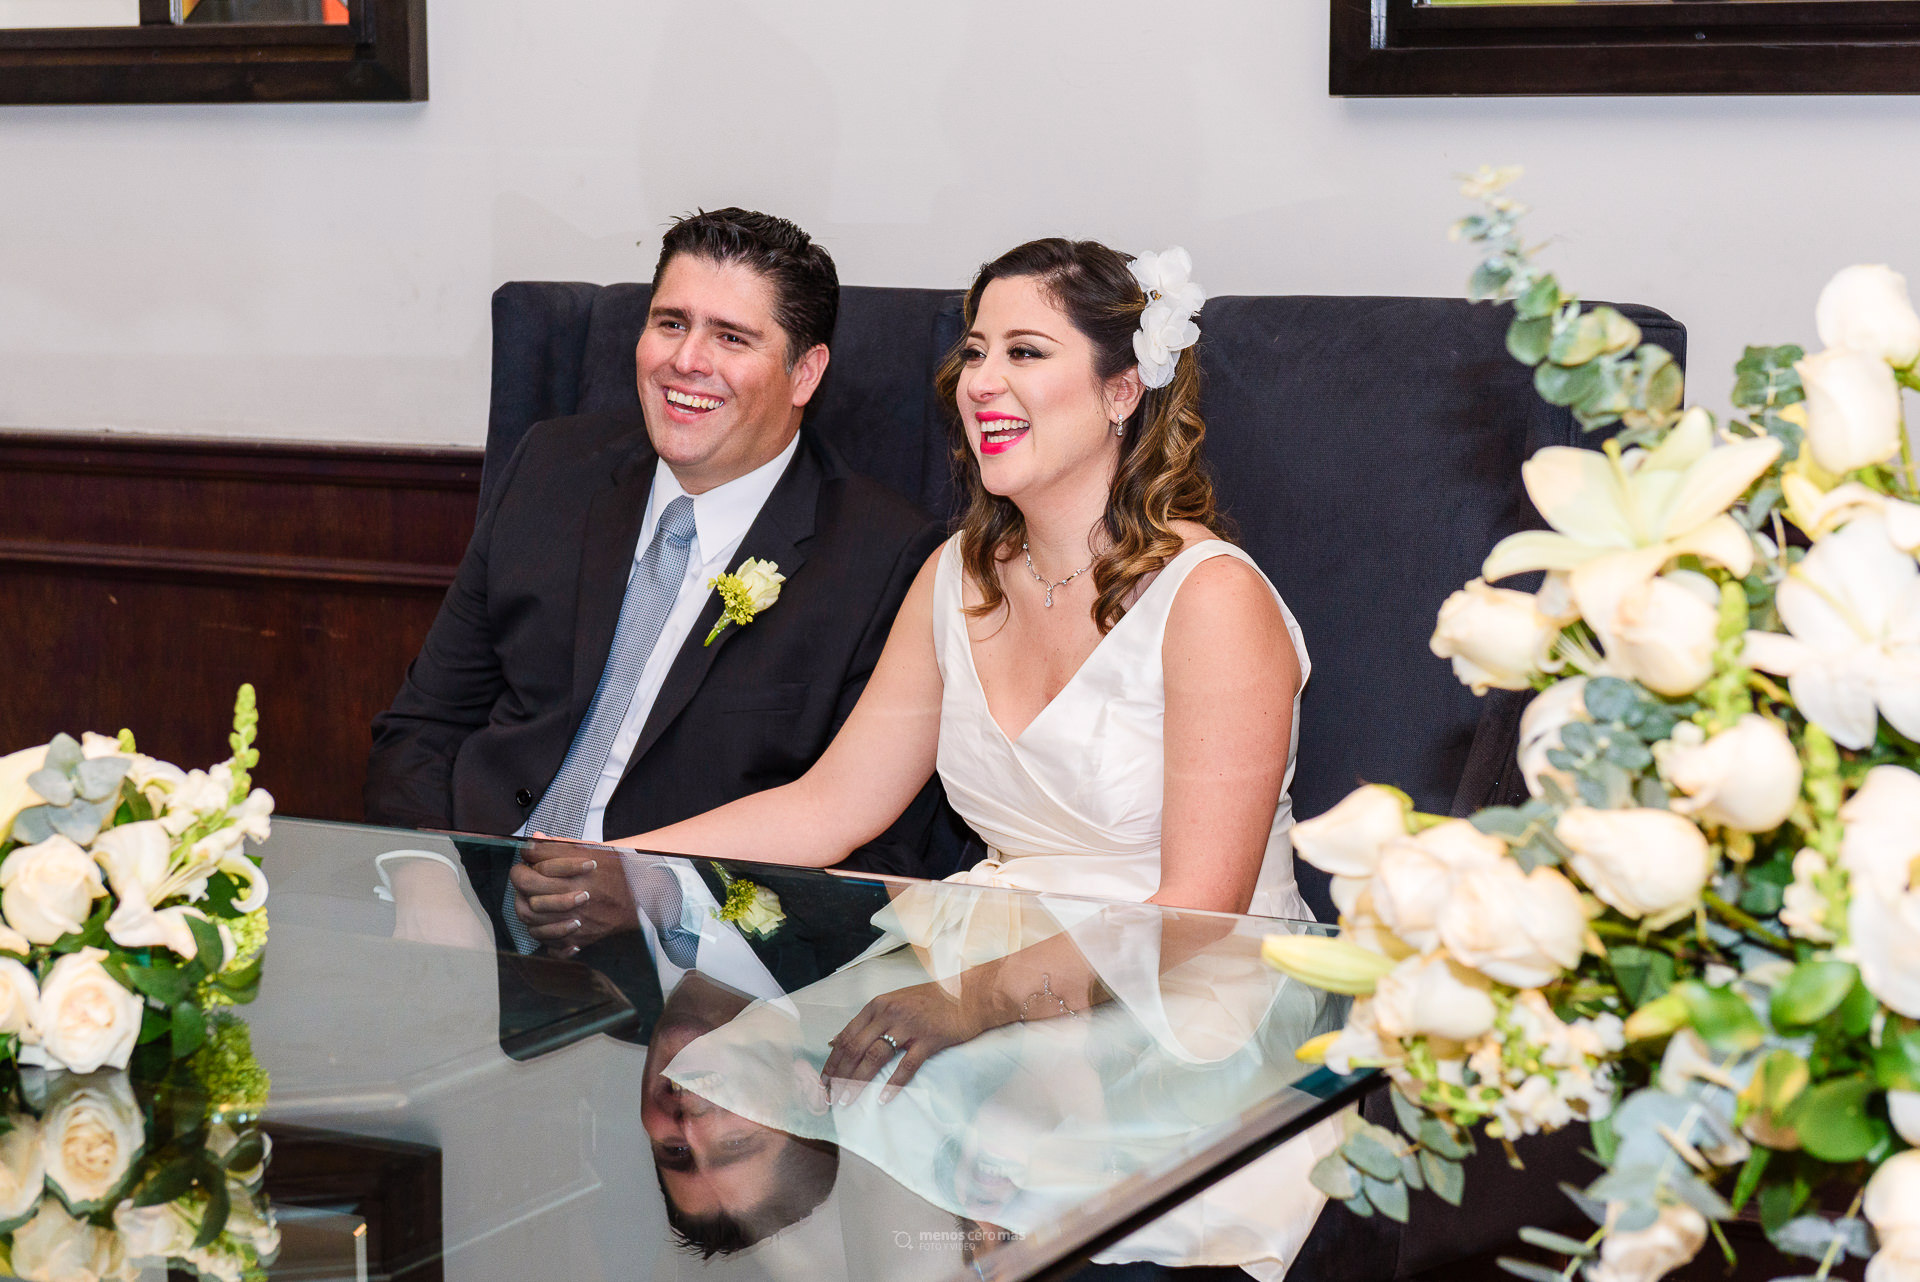 Fotografía de boda civil en Windsor Eventos, nova y novio sentados en la mesa principal sonriendo dureante la ceremonia